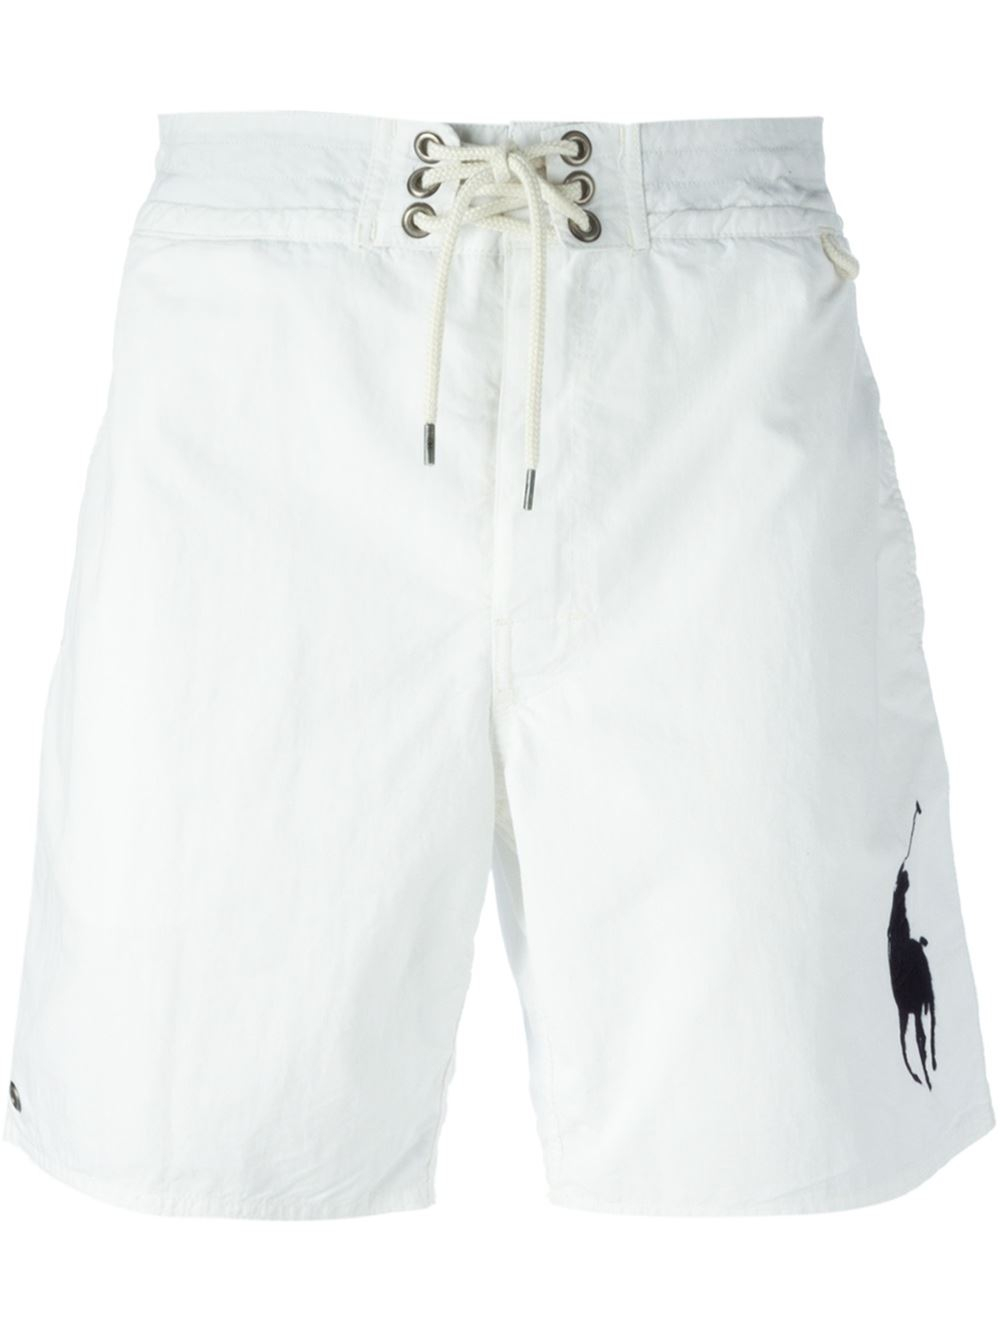 white polo swim trunks